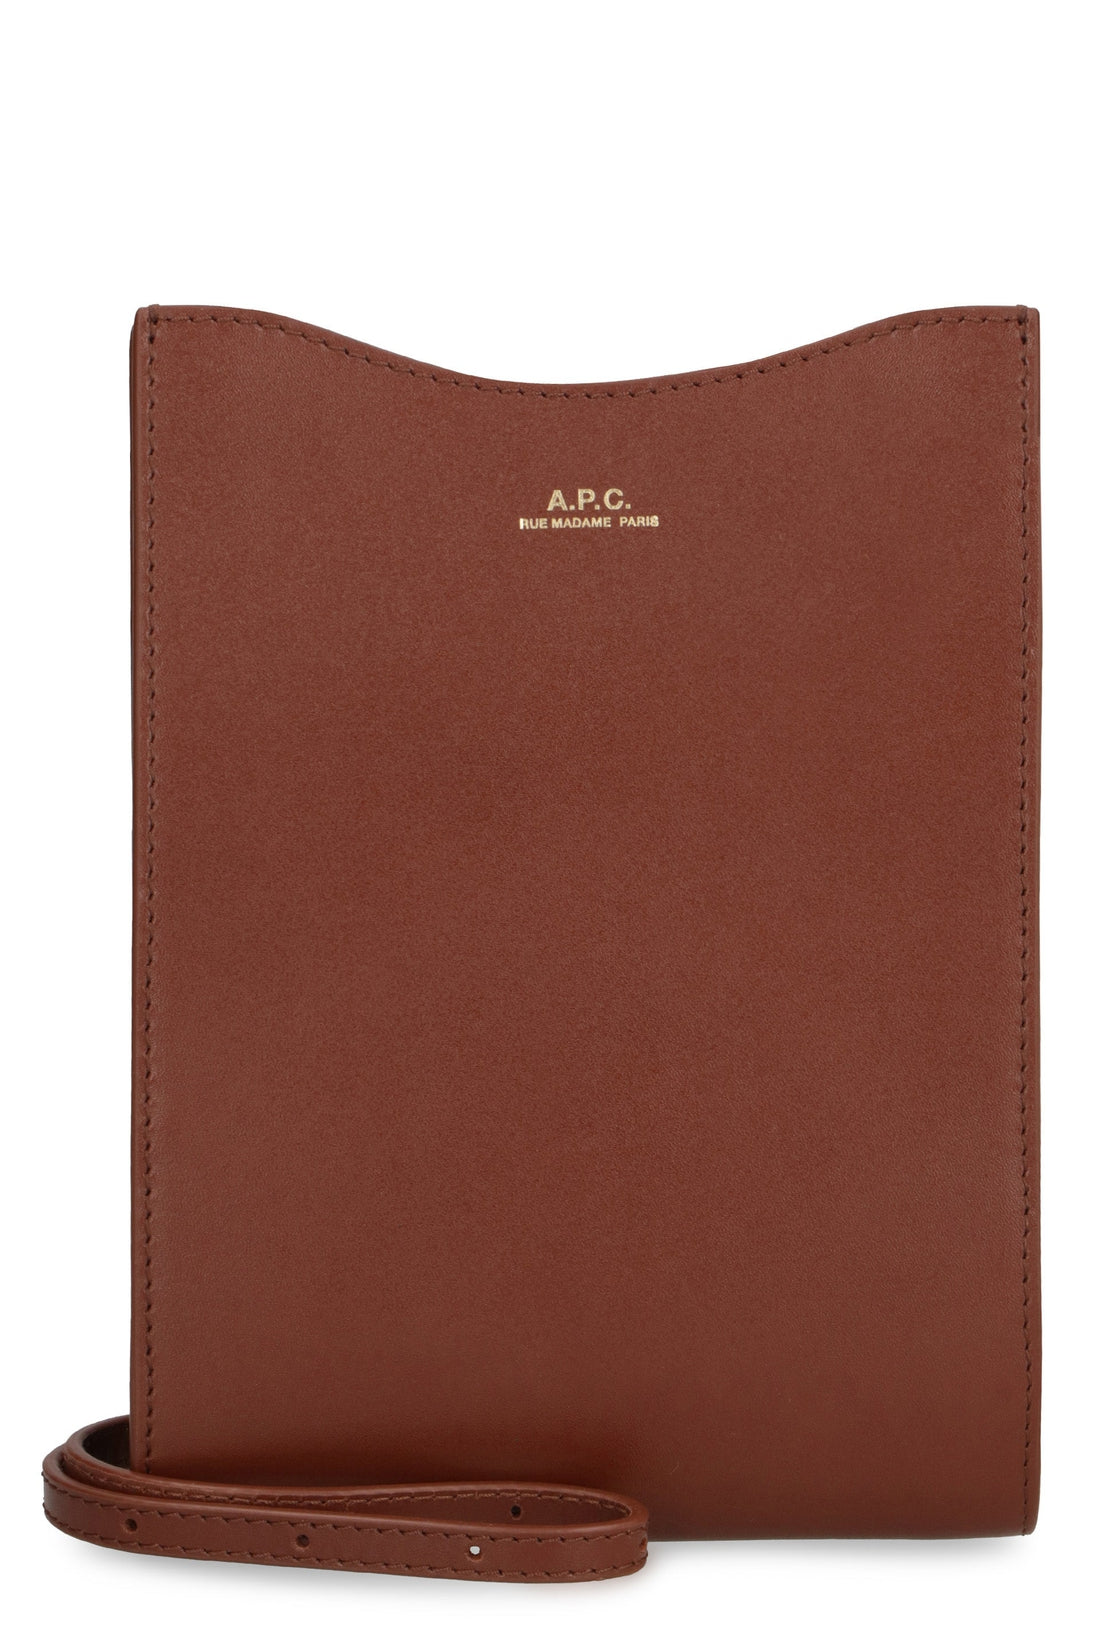 A.P.C.-OUTLET-SALE-Leather crossbody bag-ARCHIVIST